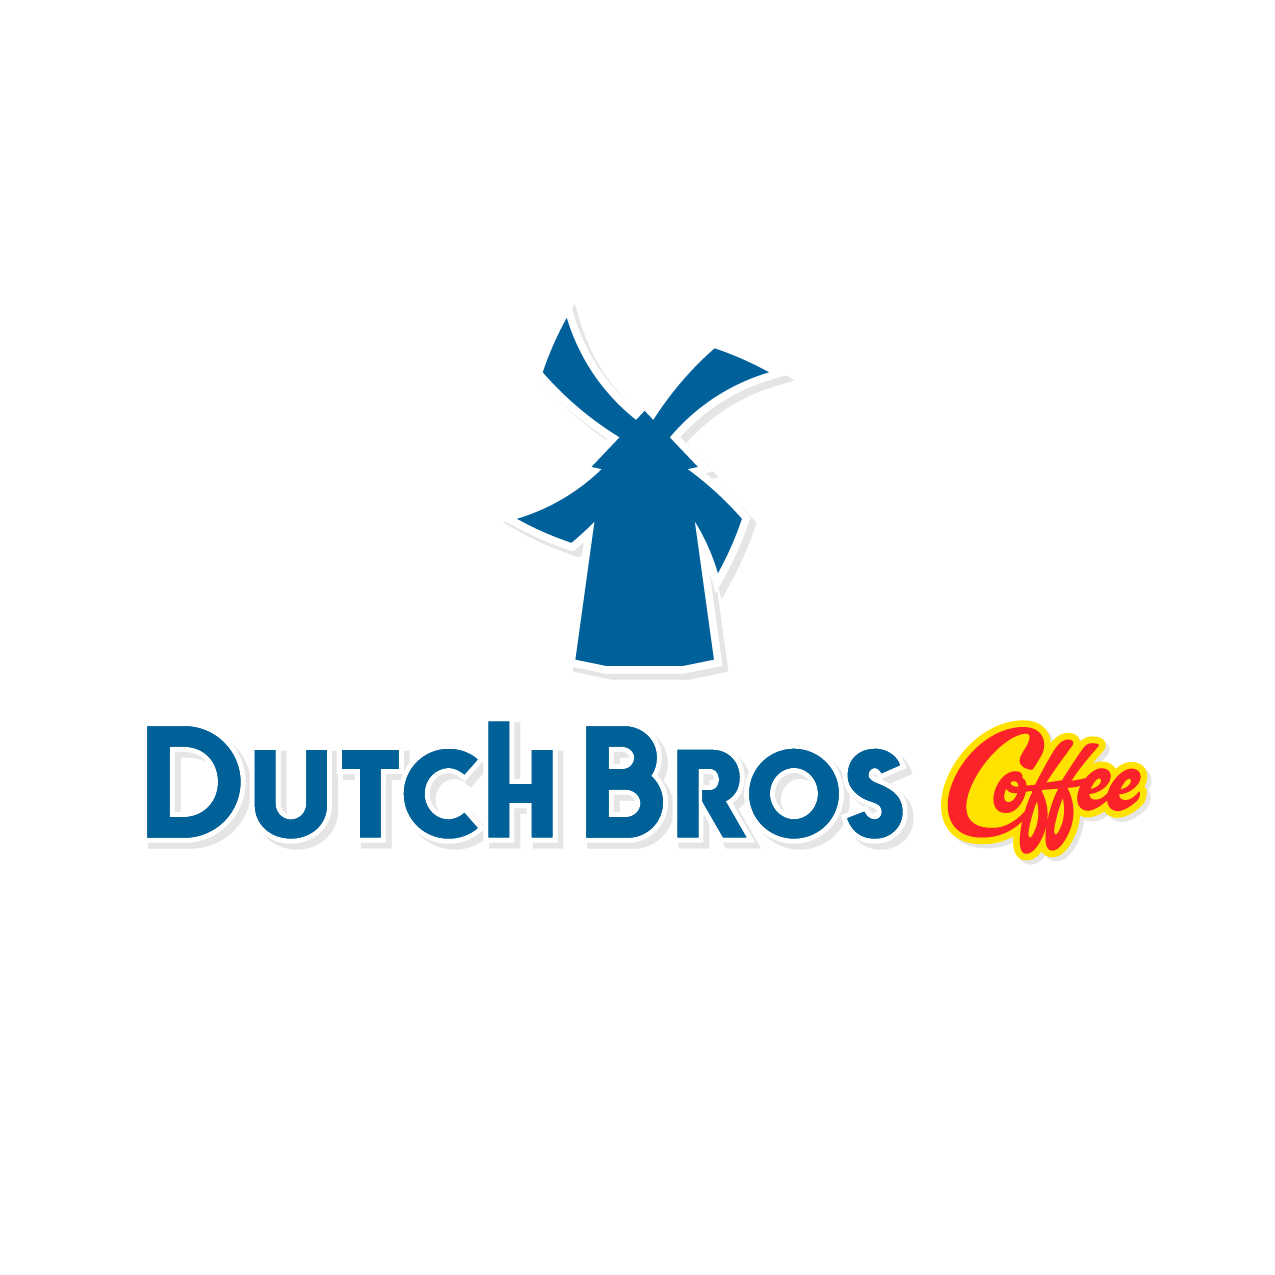 Dutch bros Logos